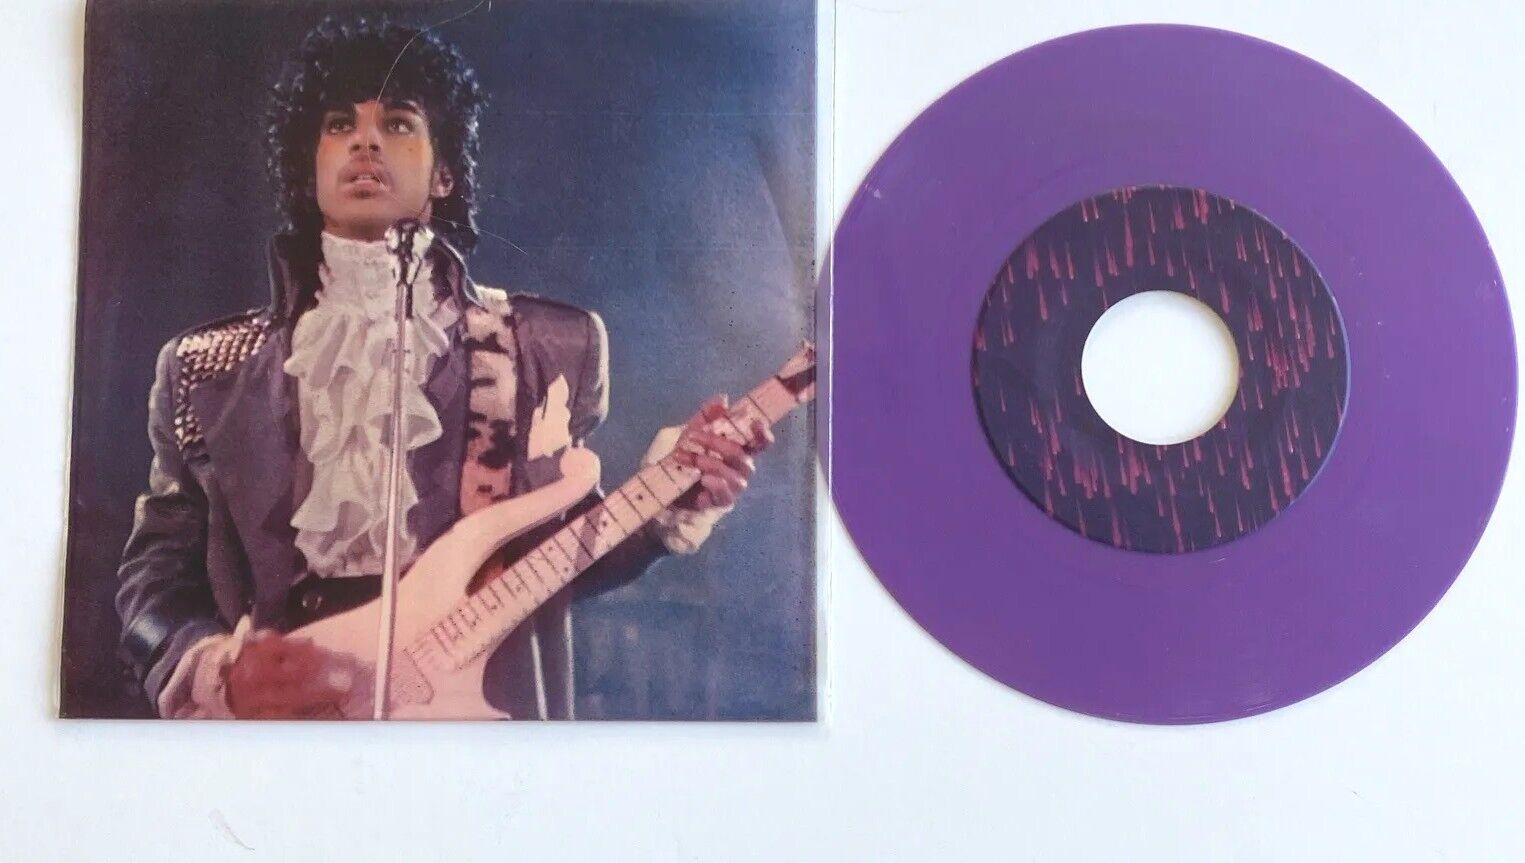 Prince, Purple Rain, 1984, 7”, 45, SUPER RARE PURPLE VINYL, PS - EXCELLENT